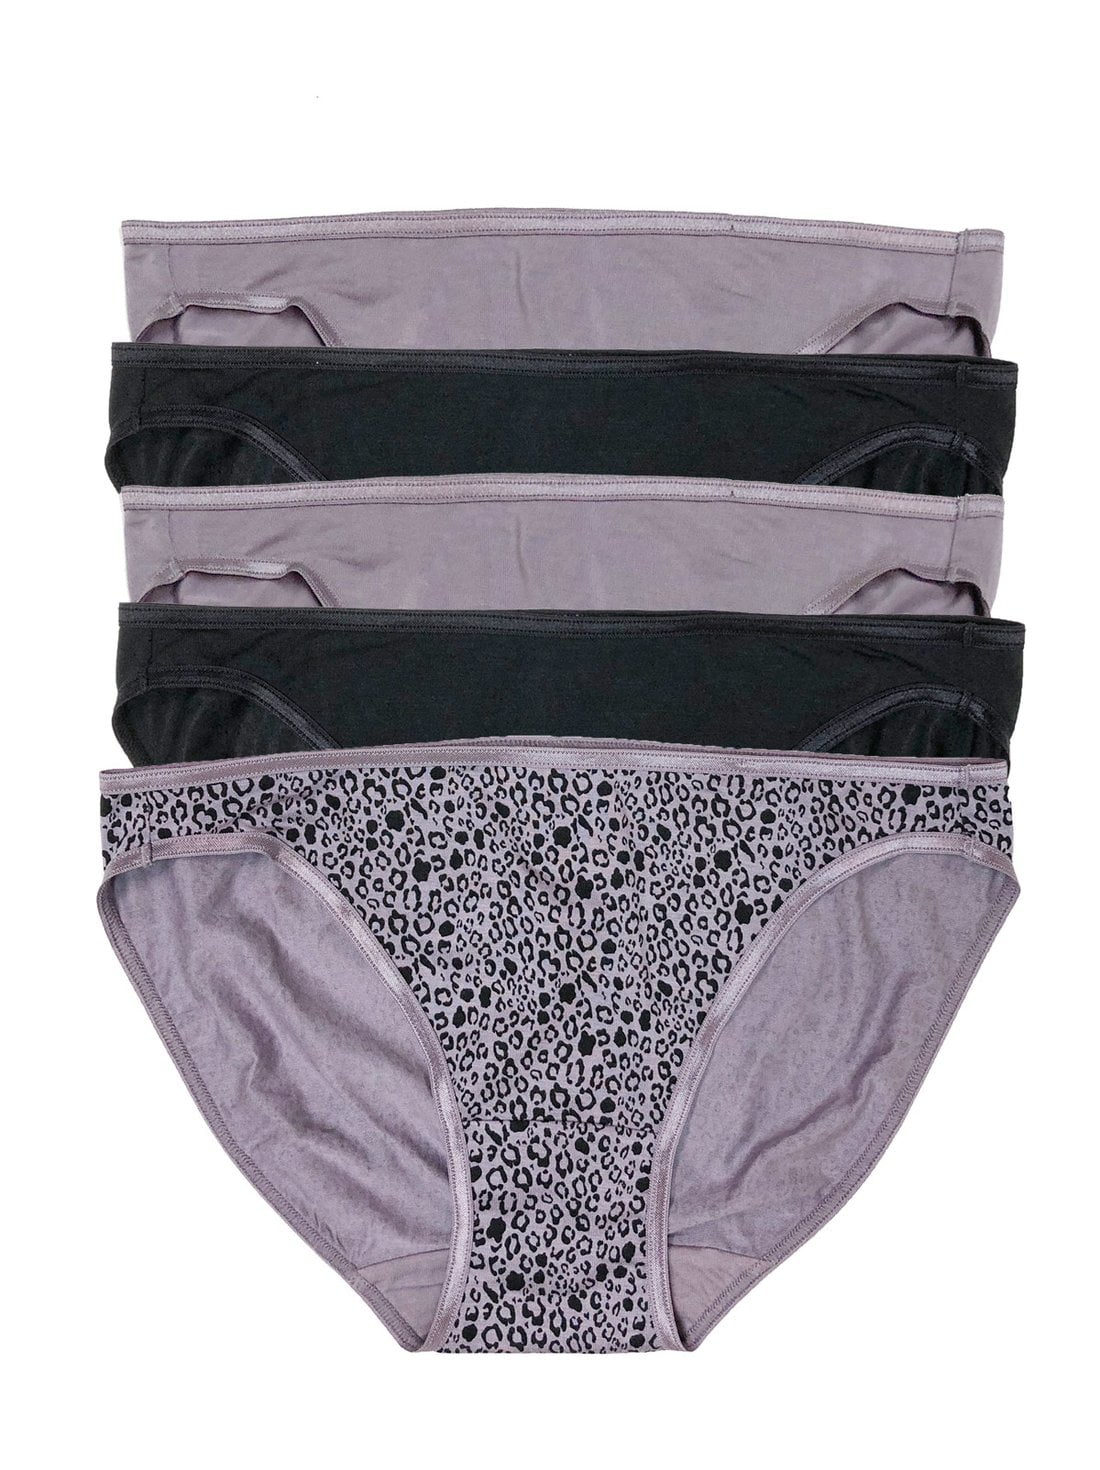 Felina | So Smooth Low Rise Bikini Panties | Seamless Underwear | 5 ...